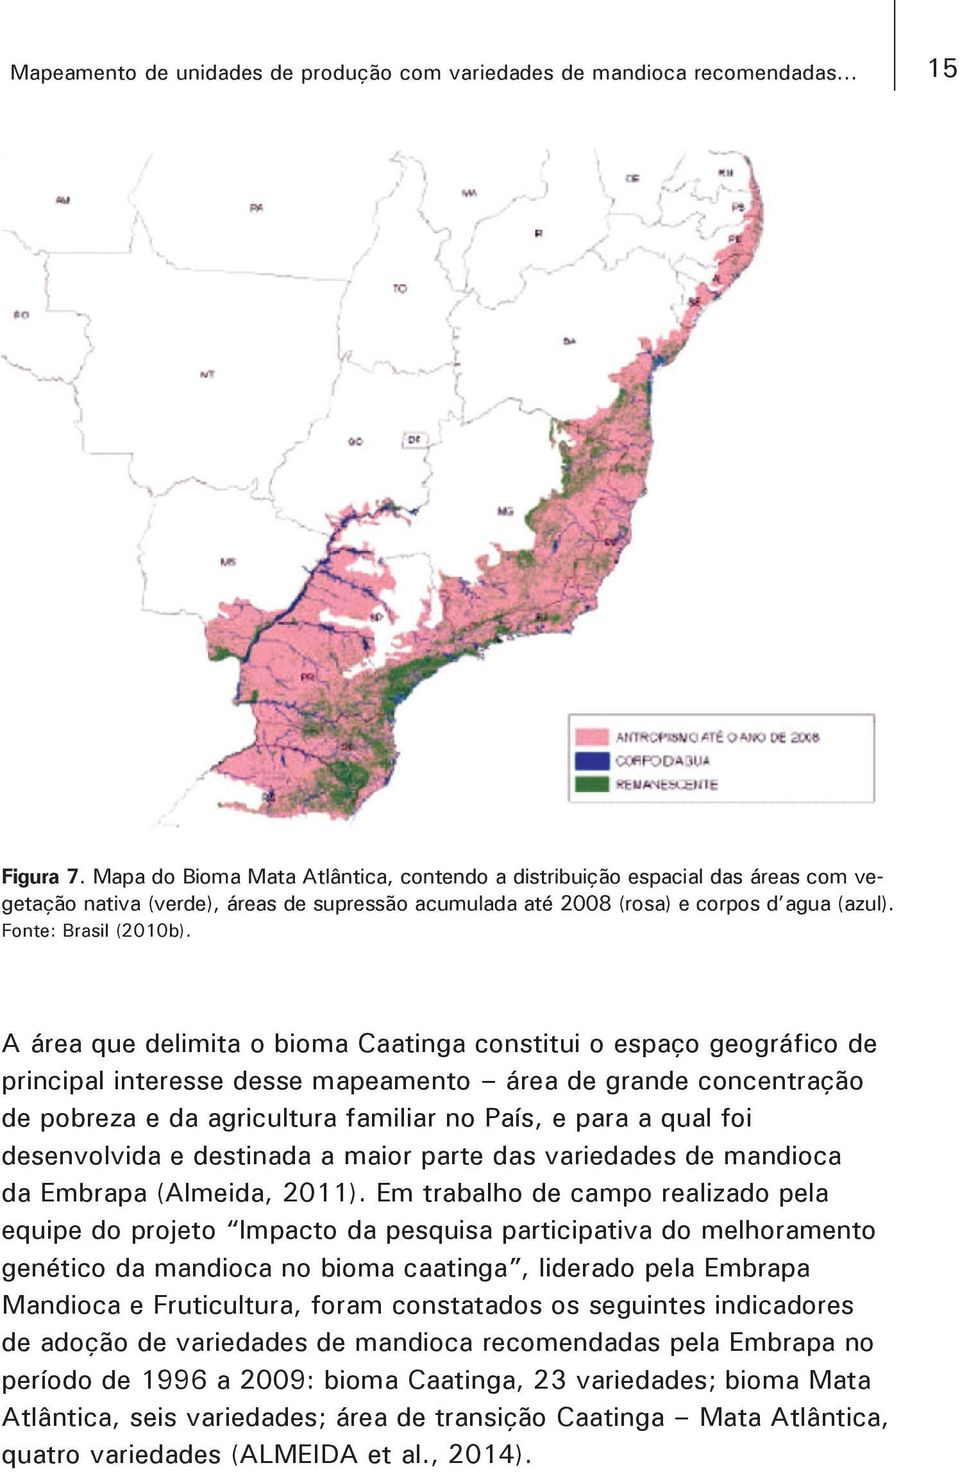 A área que delimita o bioma Caatinga constitui o espaço geográfico de principal interesse desse mapeamento área de grande concentração de pobreza e da agricultura familiar no País, e para a qual foi